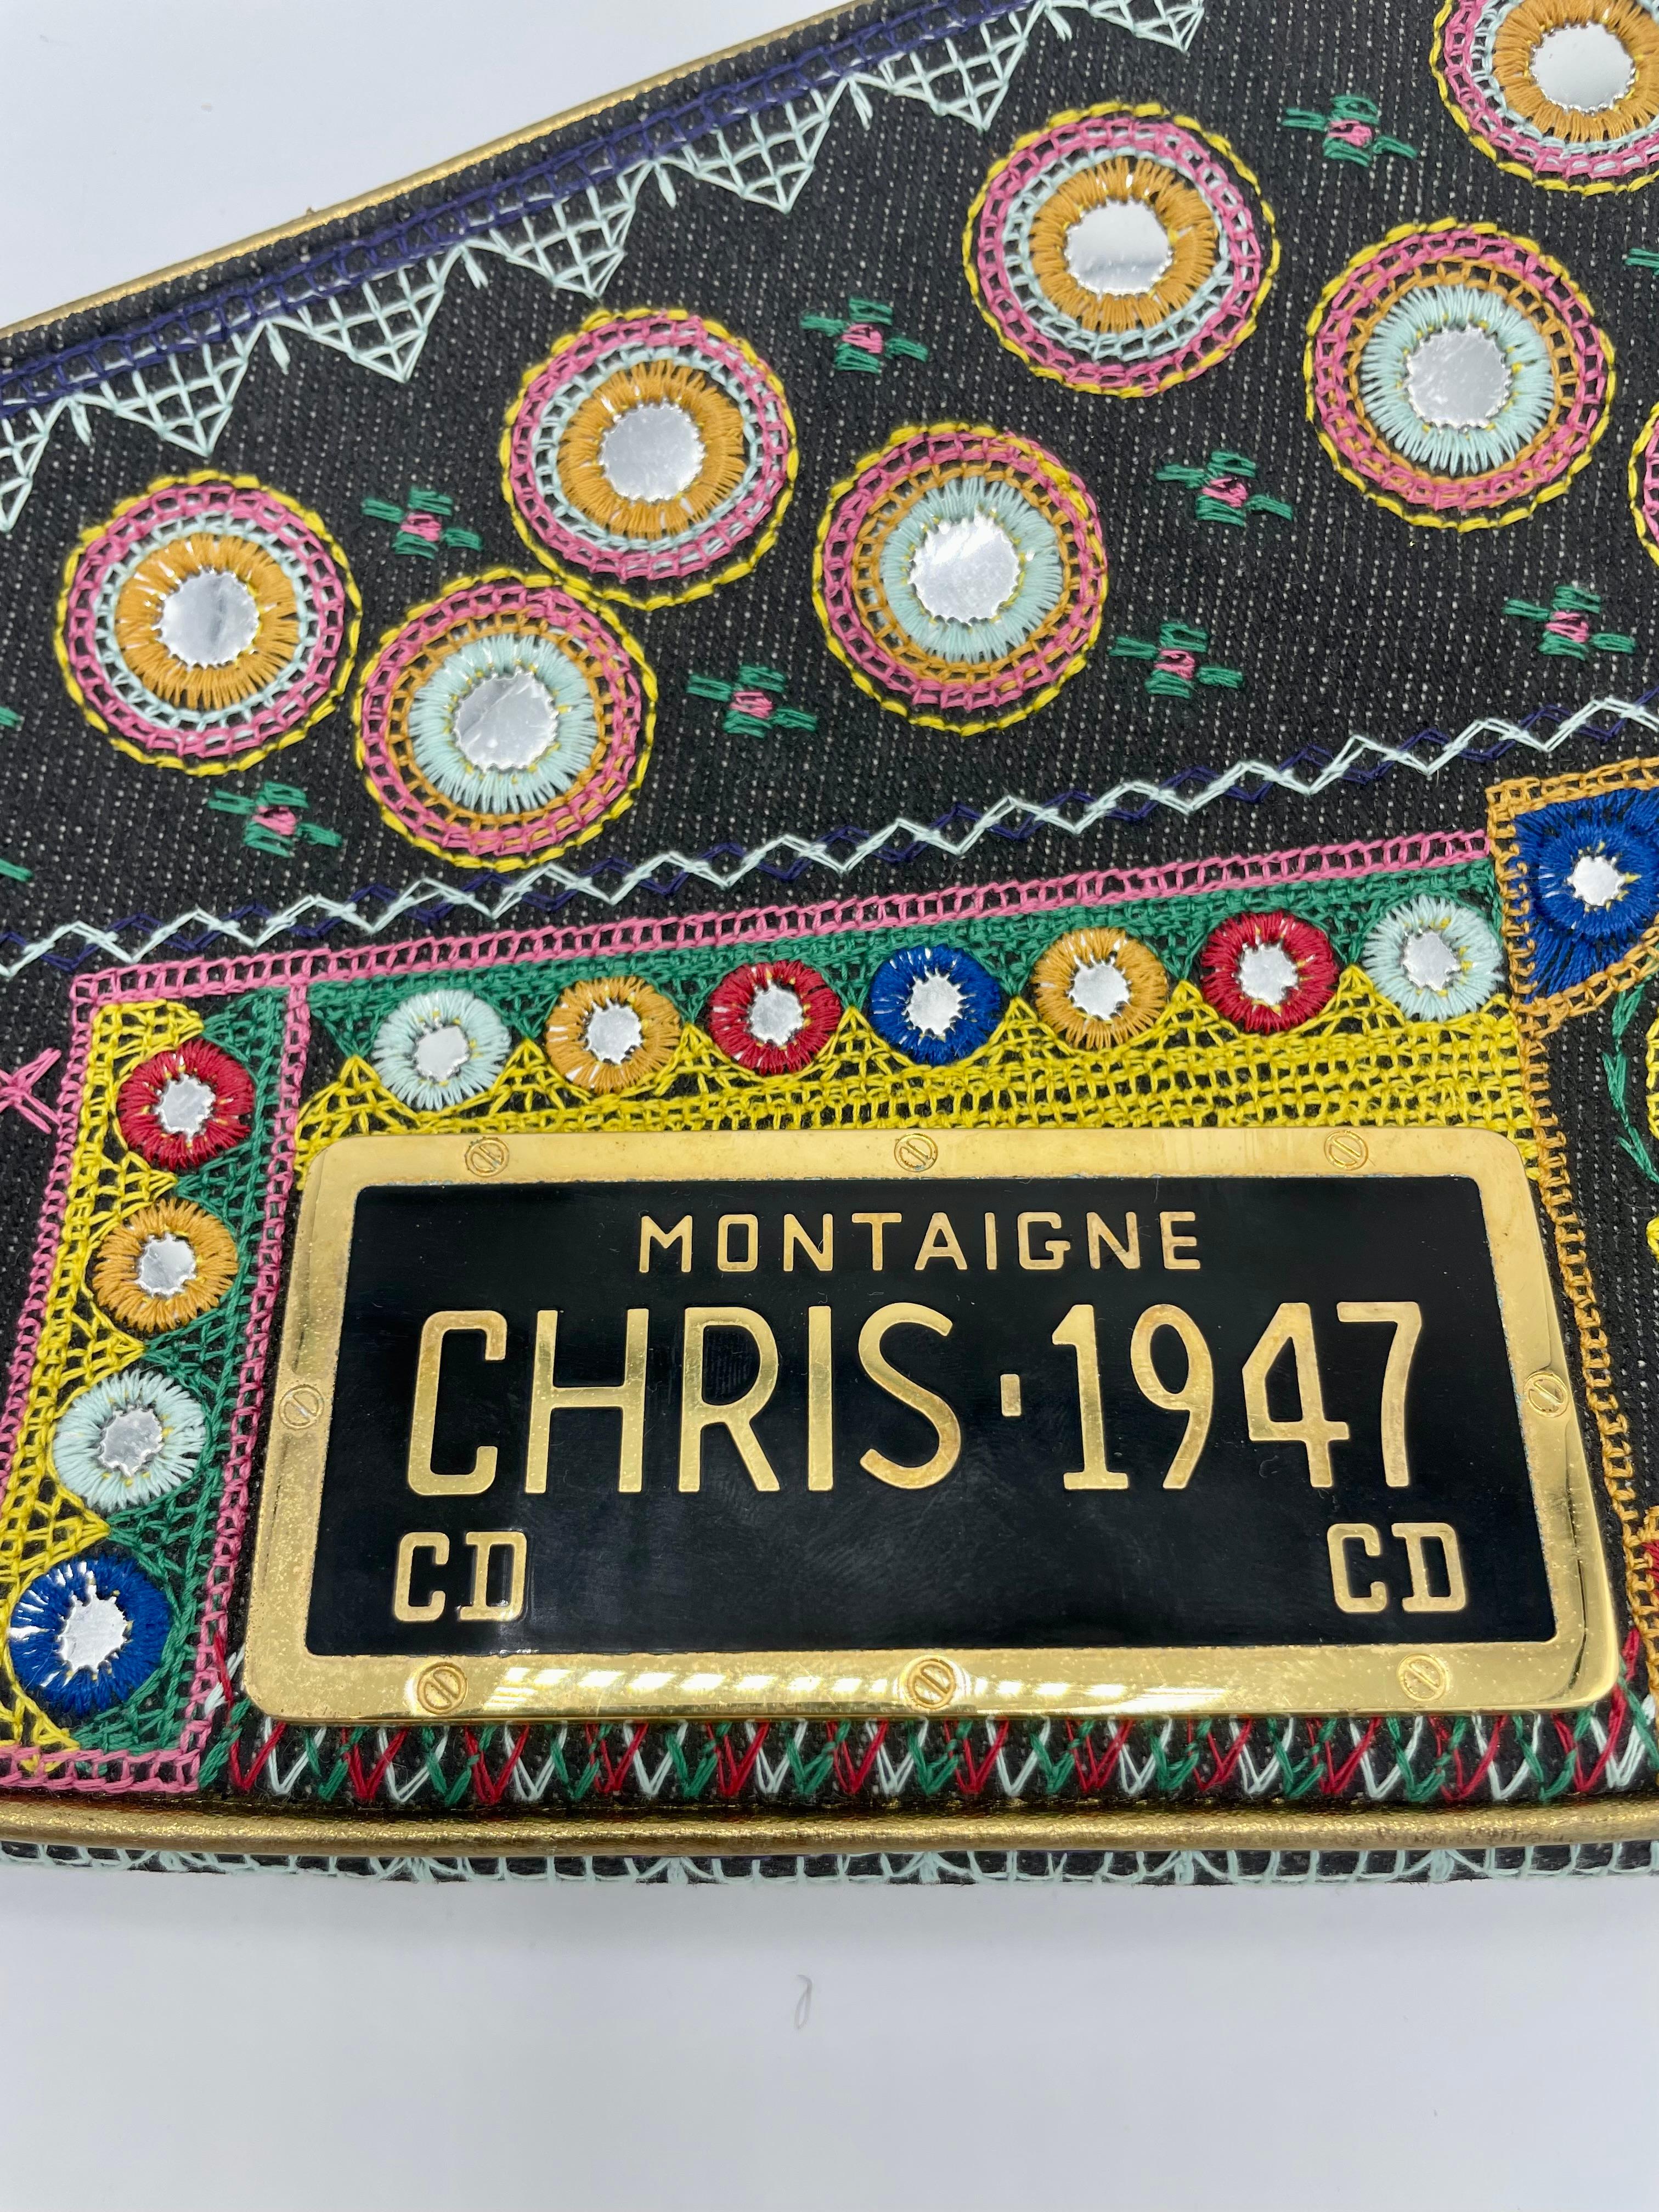 christian dior montaigne chris 1947 bag